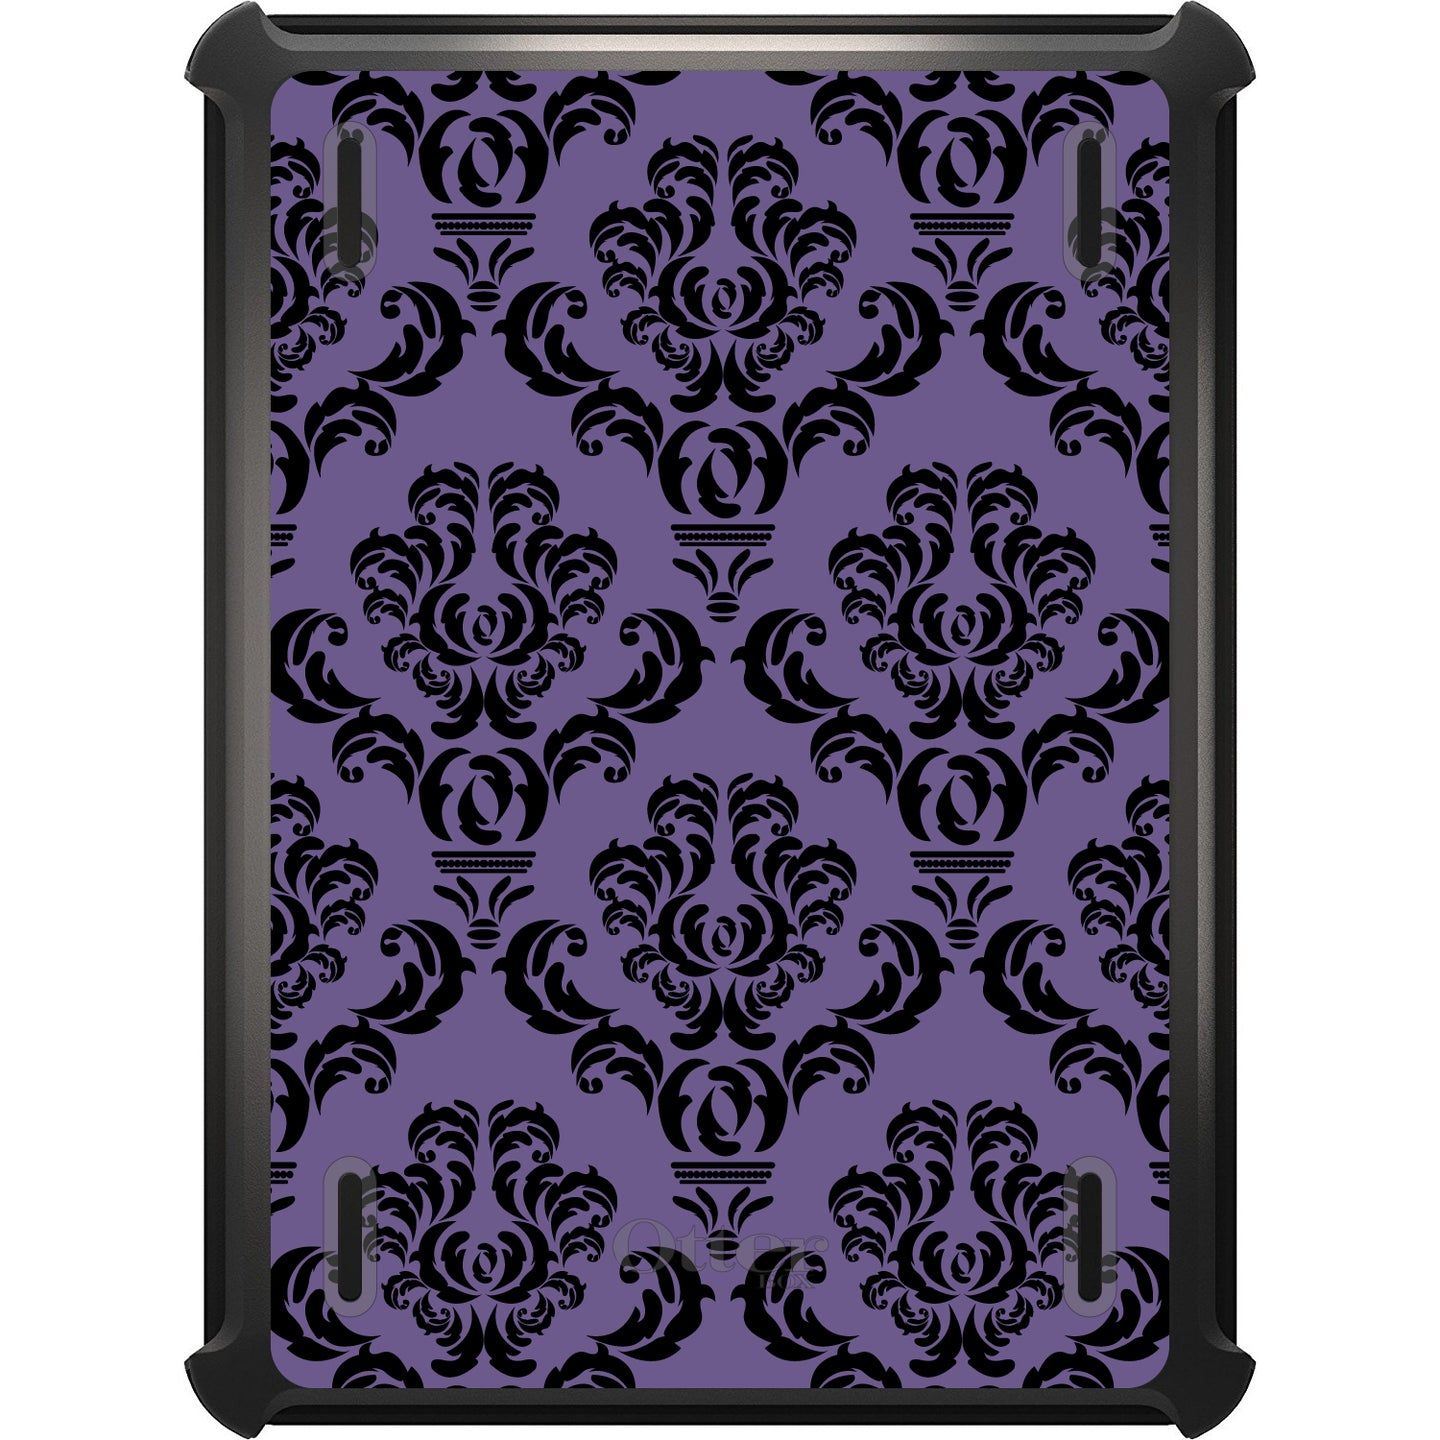 DistinctInk™ OtterBox Defender Series Case for Apple iPad / iPad Pro / iPad Air / iPad Mini - Purple Black Damask Floral